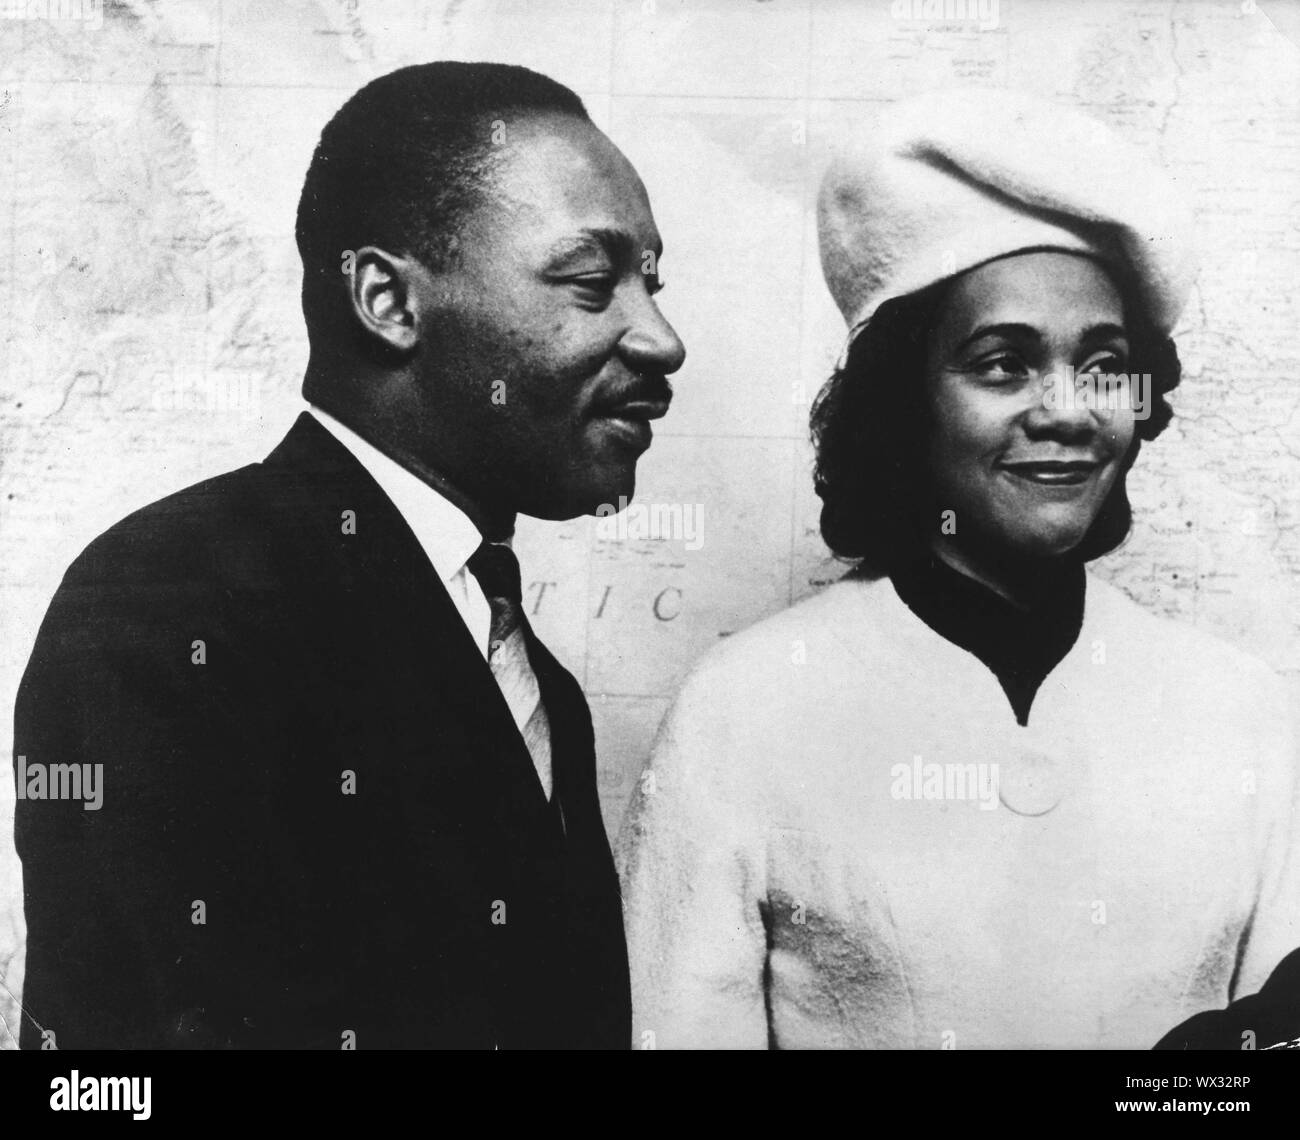 Il 4 dicembre, 1964 - New York New York, Stati Uniti d'America - Il Reverendo Martin Luther King Jr. con la moglie Coretta Scott King durante un incontro con le Nazioni Unite il Sottosegretario. (Credito Immagine: © Keystone Press Agency/Keystone USA via ZUMAPRESS.com) Foto Stock